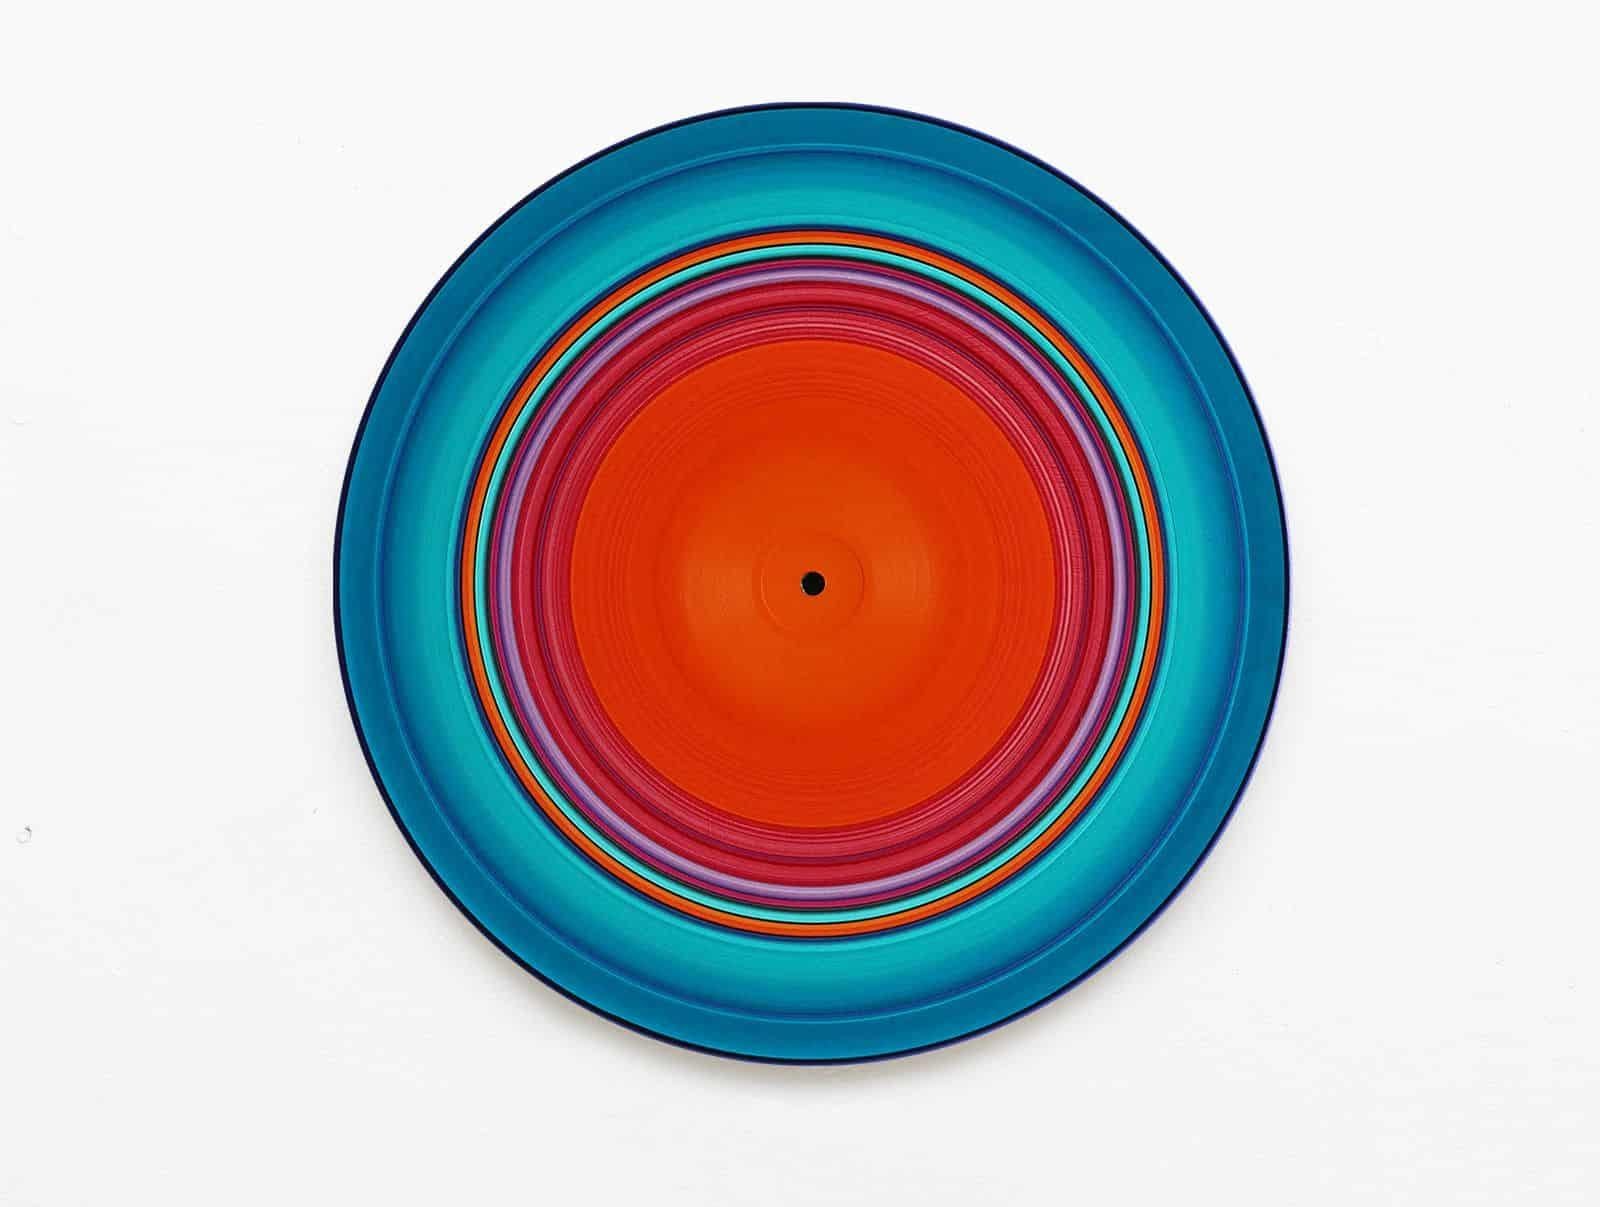 Turquoise Edition No.12, ist ein einzigartiges Ölgemälde auf Vinyl der deutschen Künstlerin Doris Marten mit den Maßen 30 cm x 30 cm.
Das Kunstwerk ist signiert, wird ungerahmt verkauft und wird mit einem Echtheitszertifikat geliefert.

Dieses